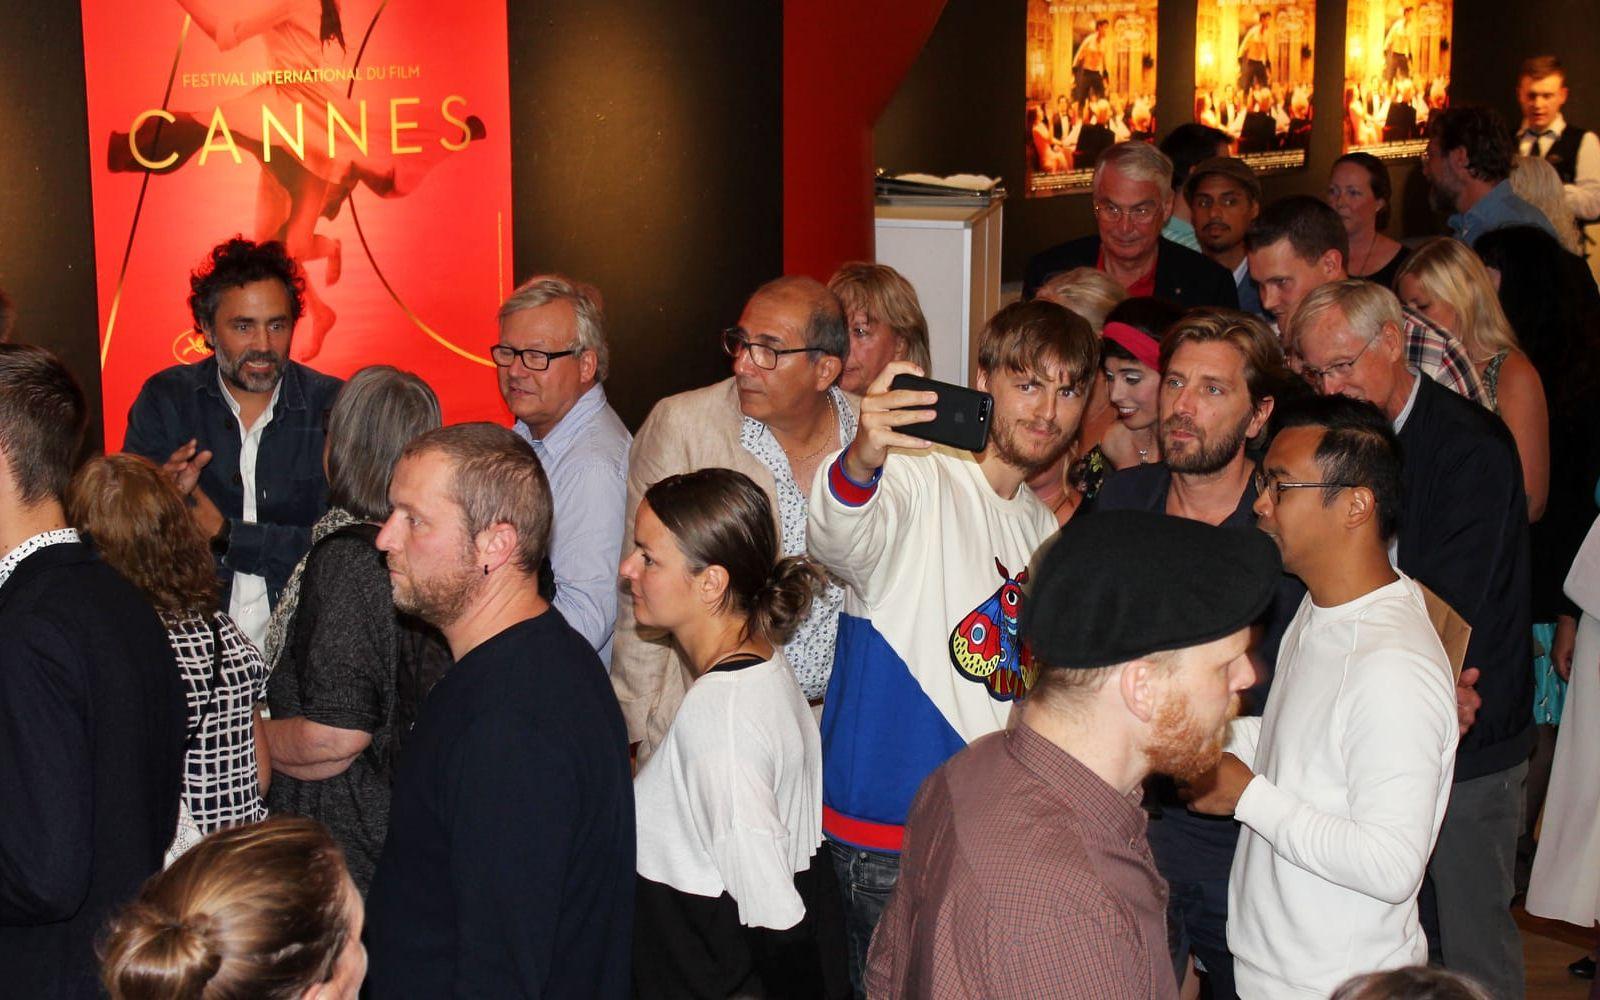 Kändistätt. Många minglade och ville ta en selfie med Ruben Östlund innan visningen.